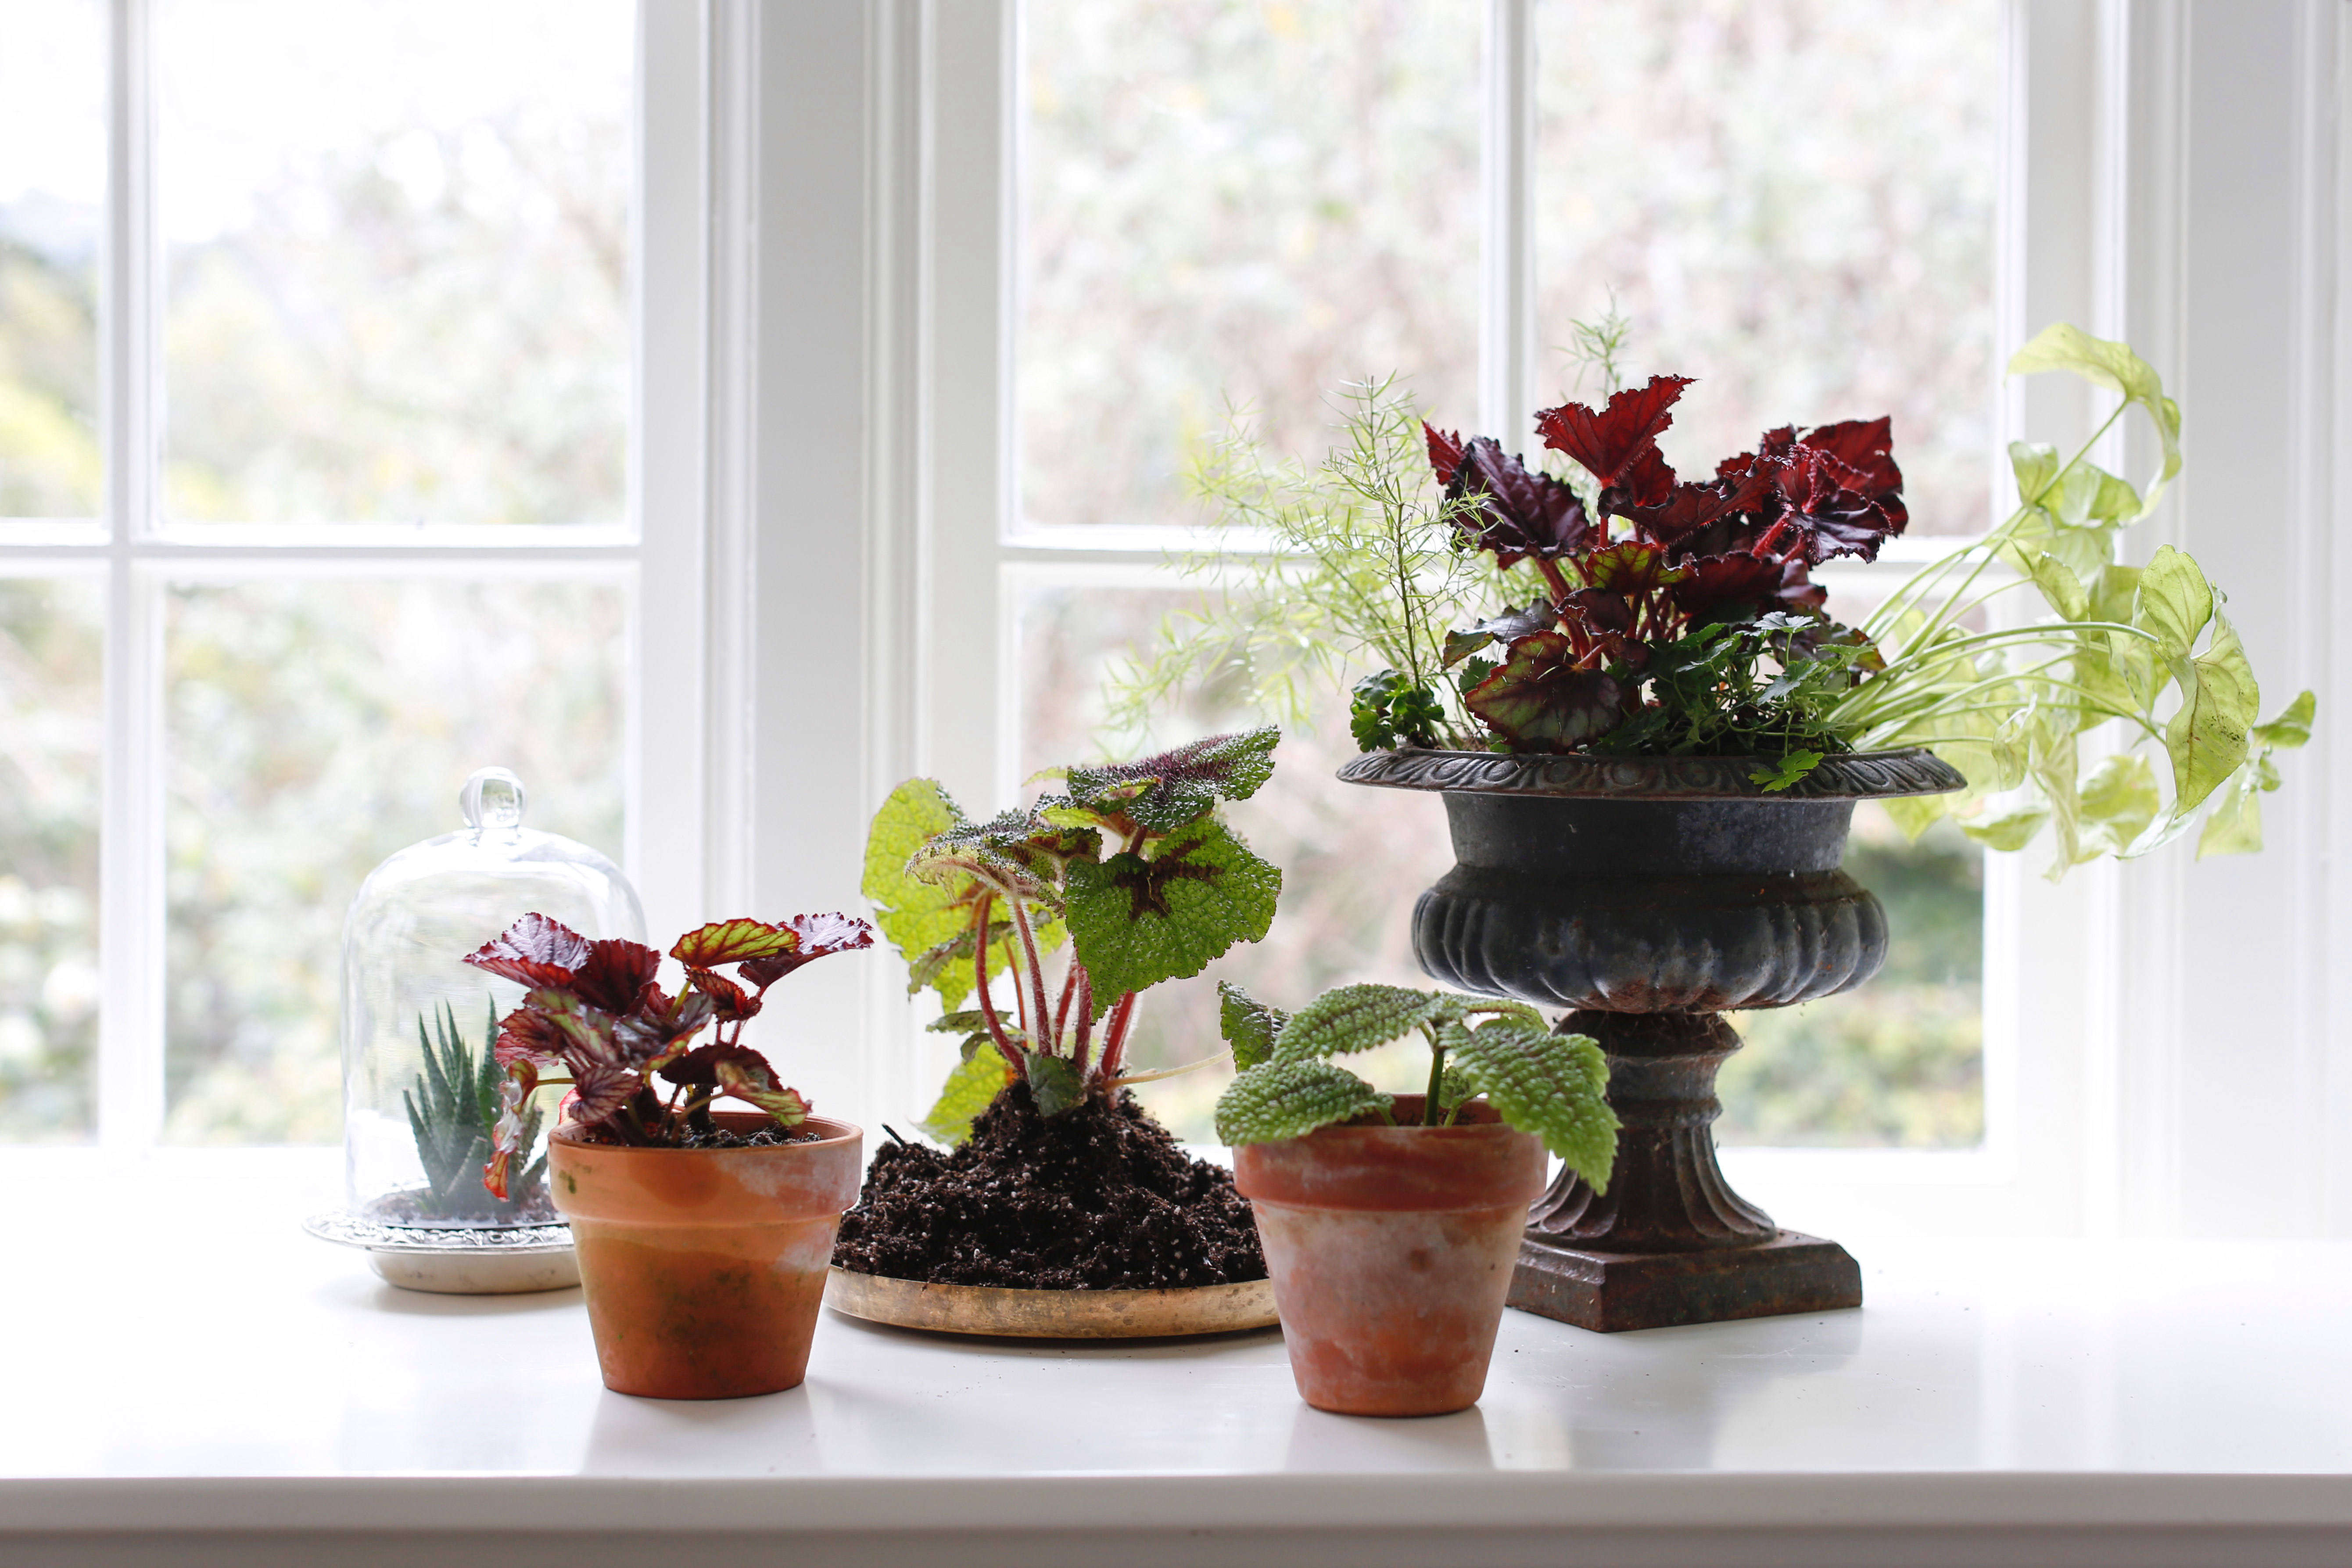 Growing Begonias Indoors: Tips For Successful Indoor Gardening